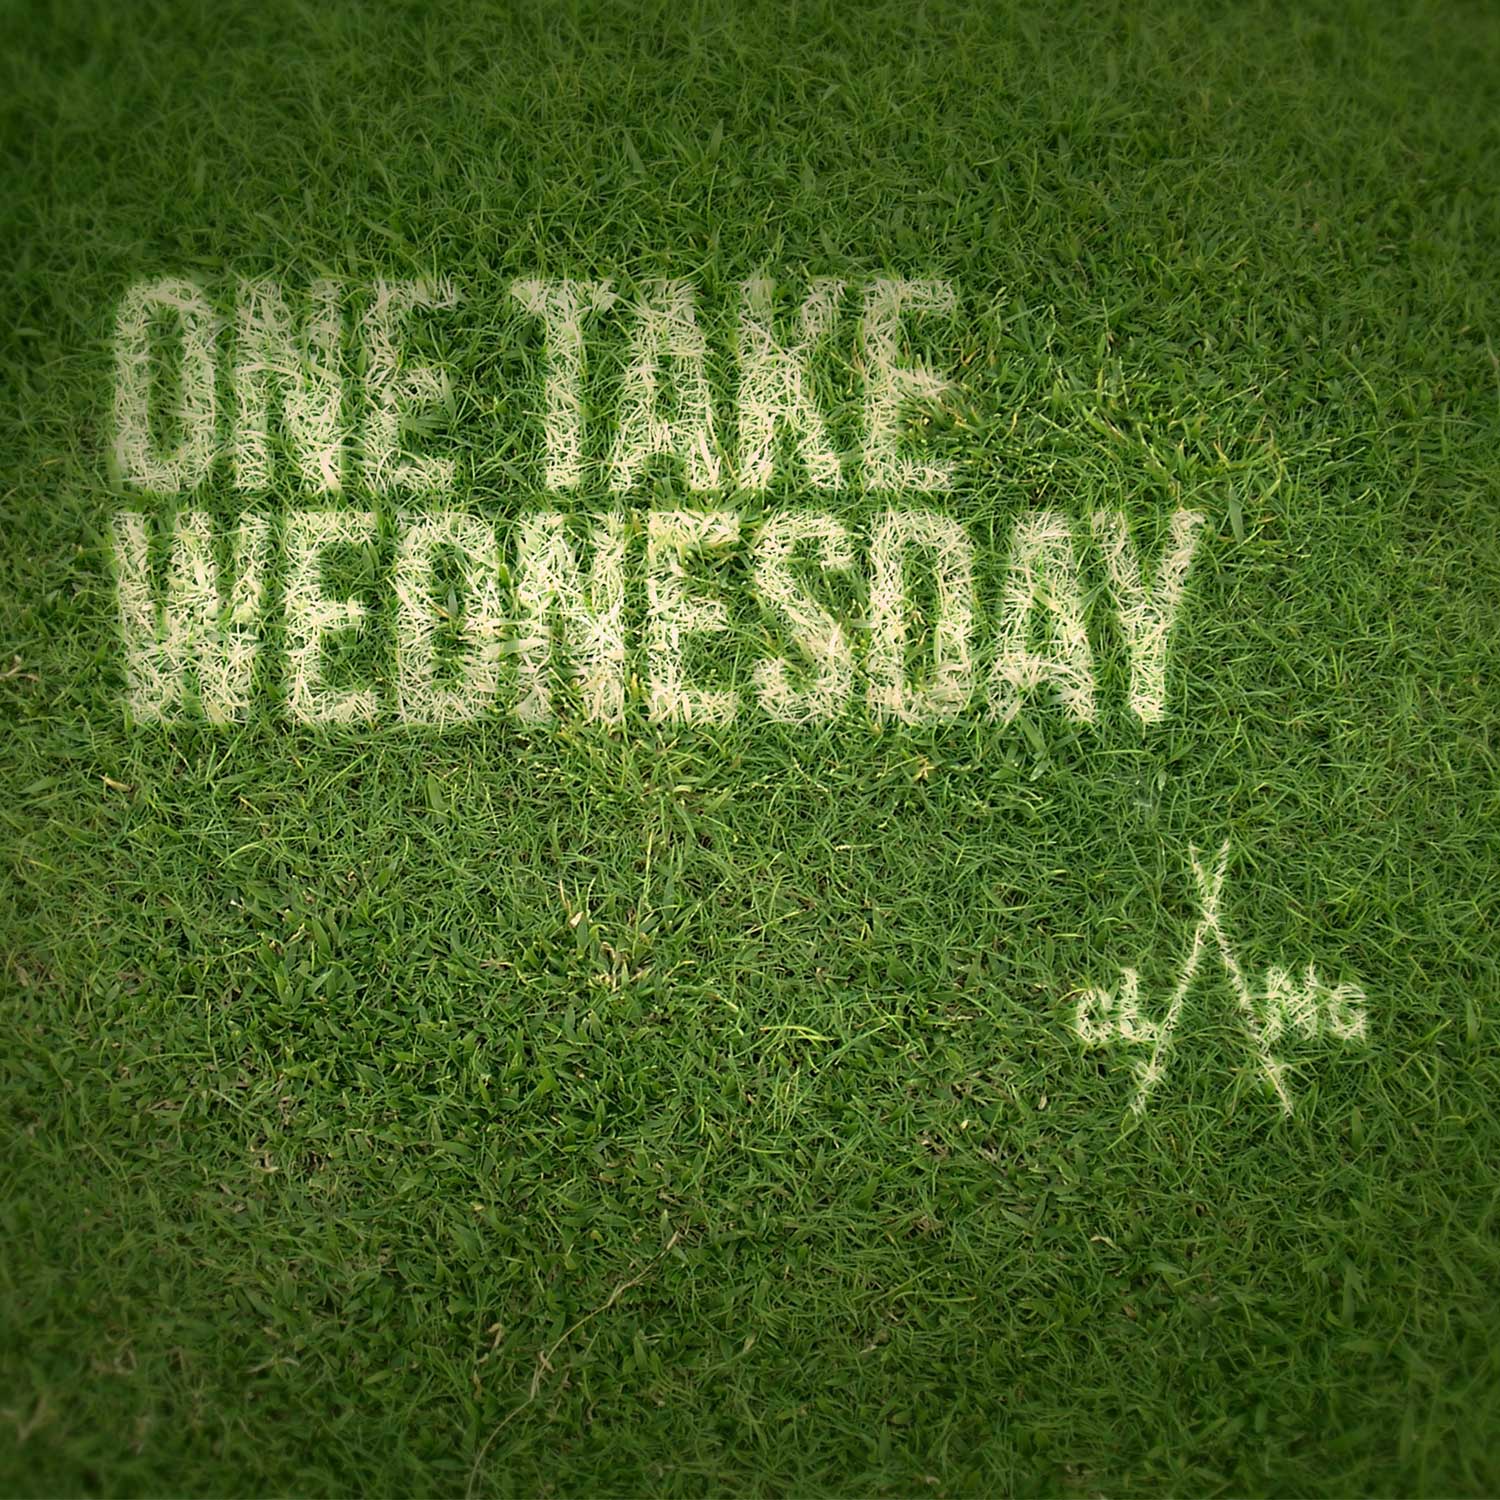 One Take Wednesday field